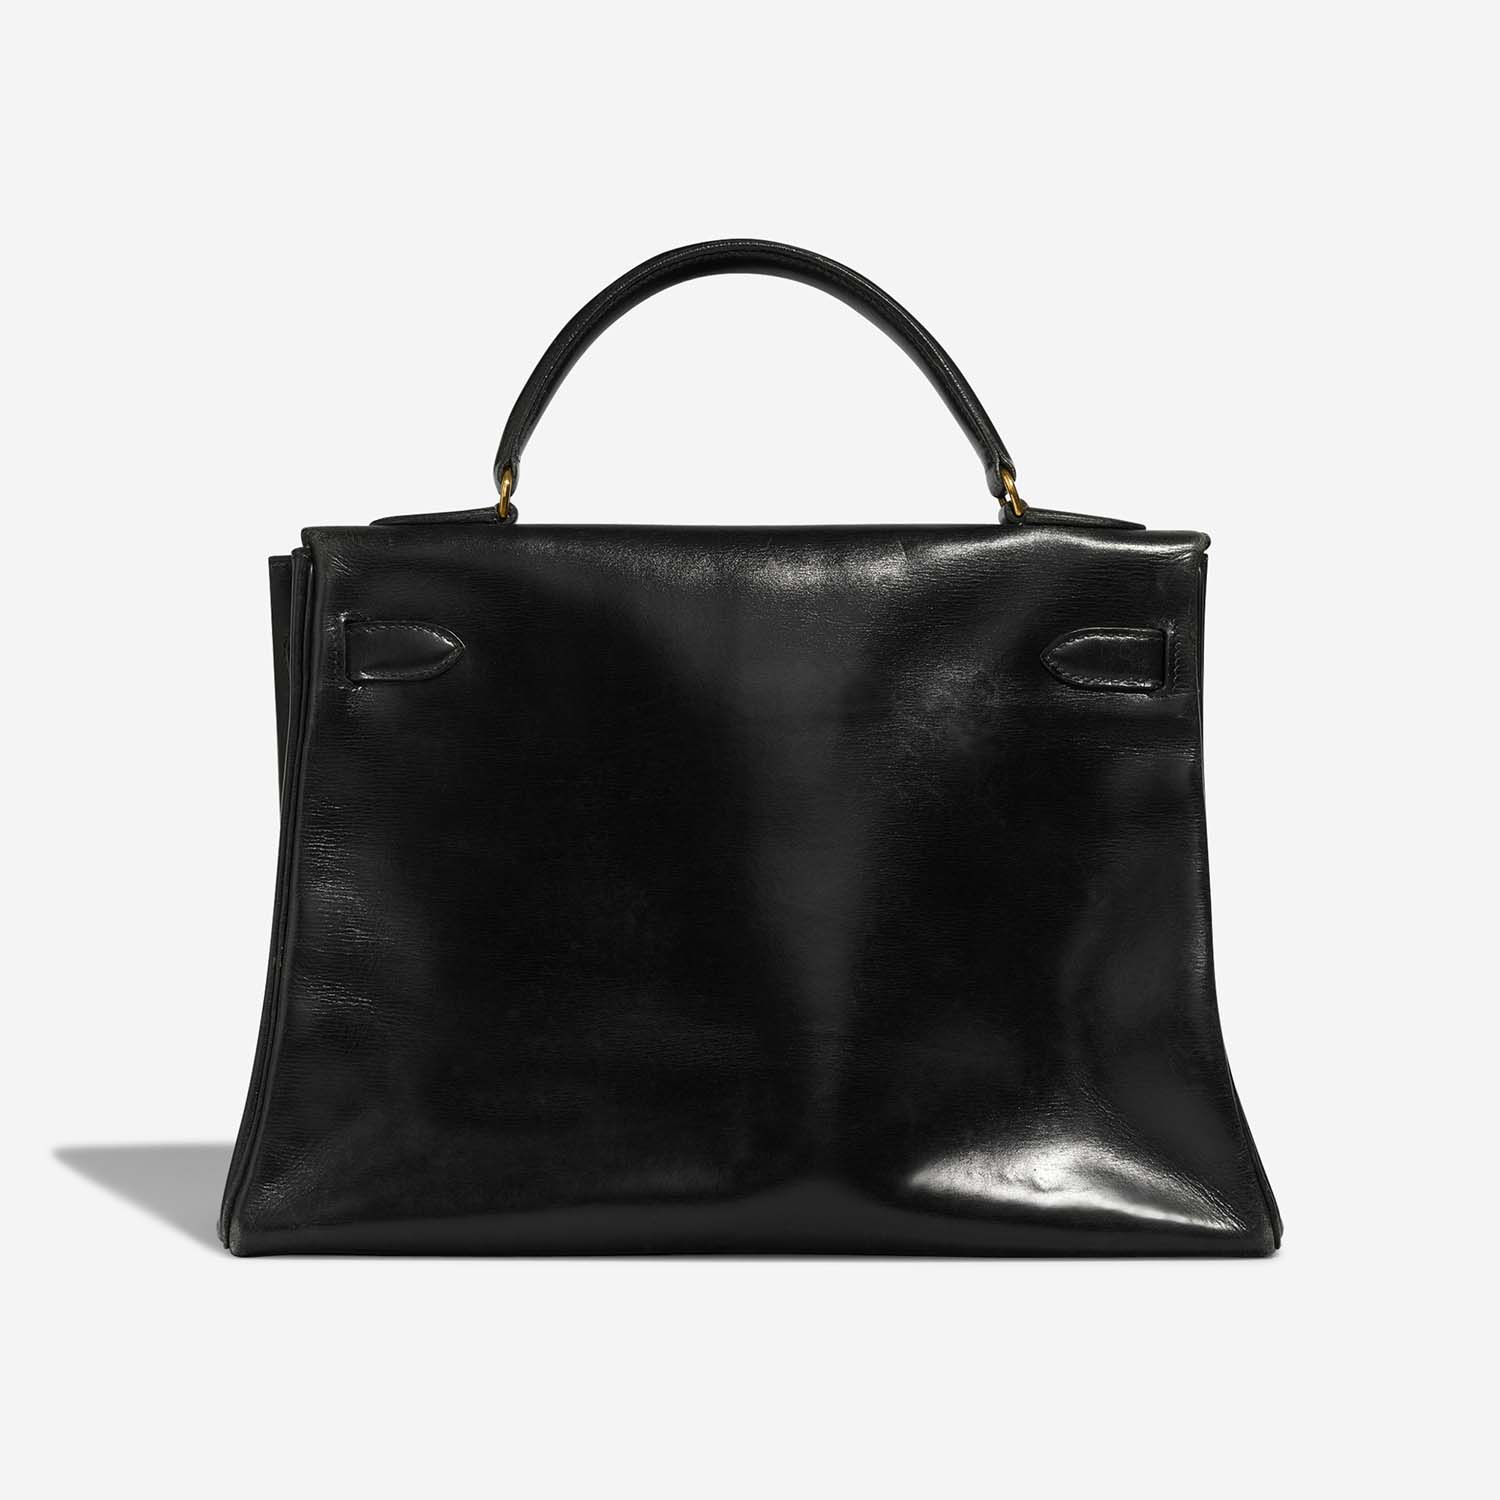 Hermès Kelly 32 Black Back | Verkaufen Sie Ihre Designertasche auf Saclab.com